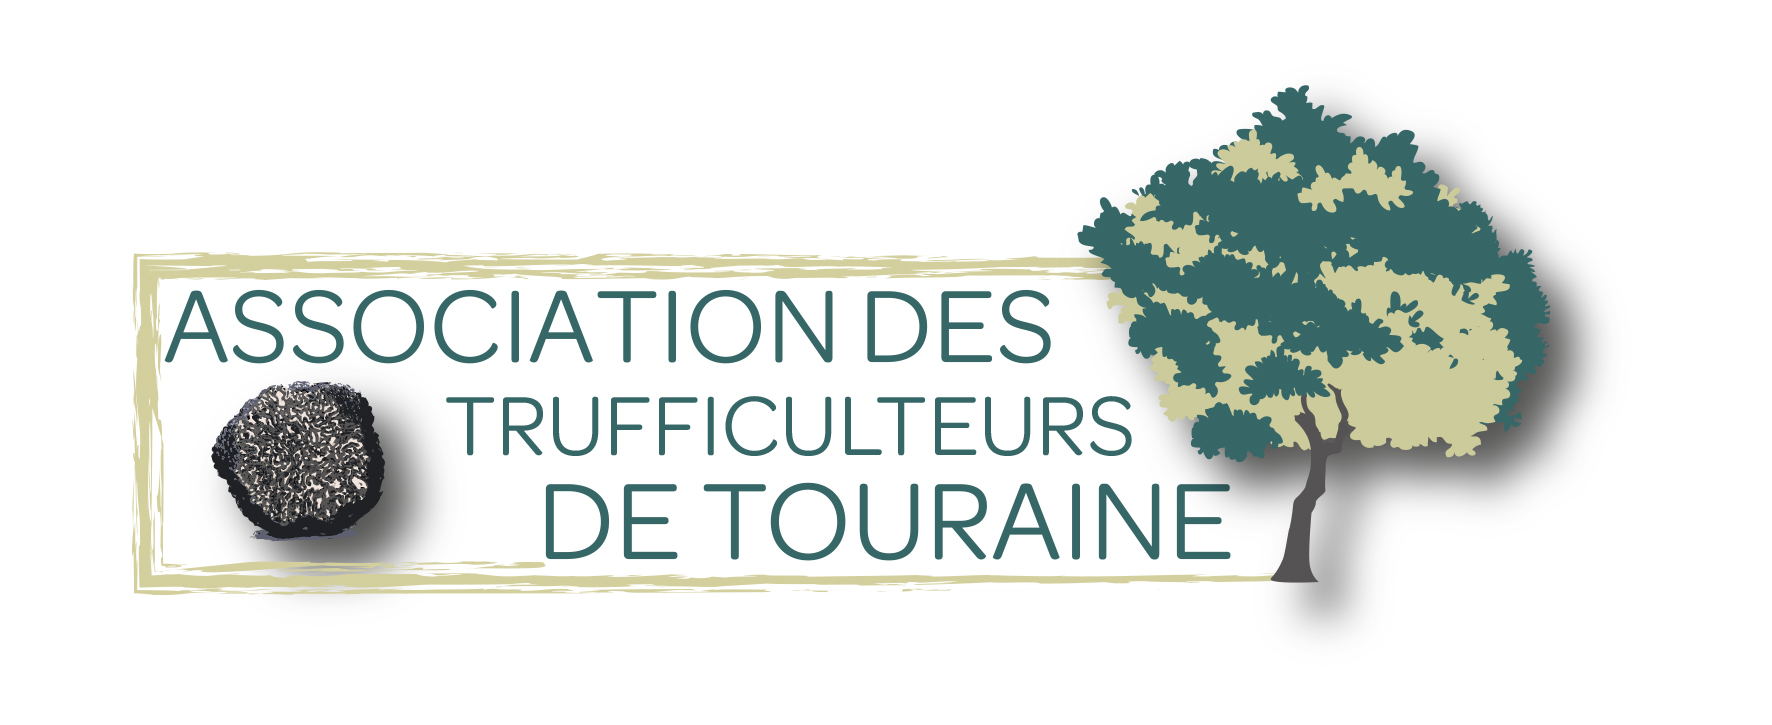 Association des Trufficulteurs de Touraine